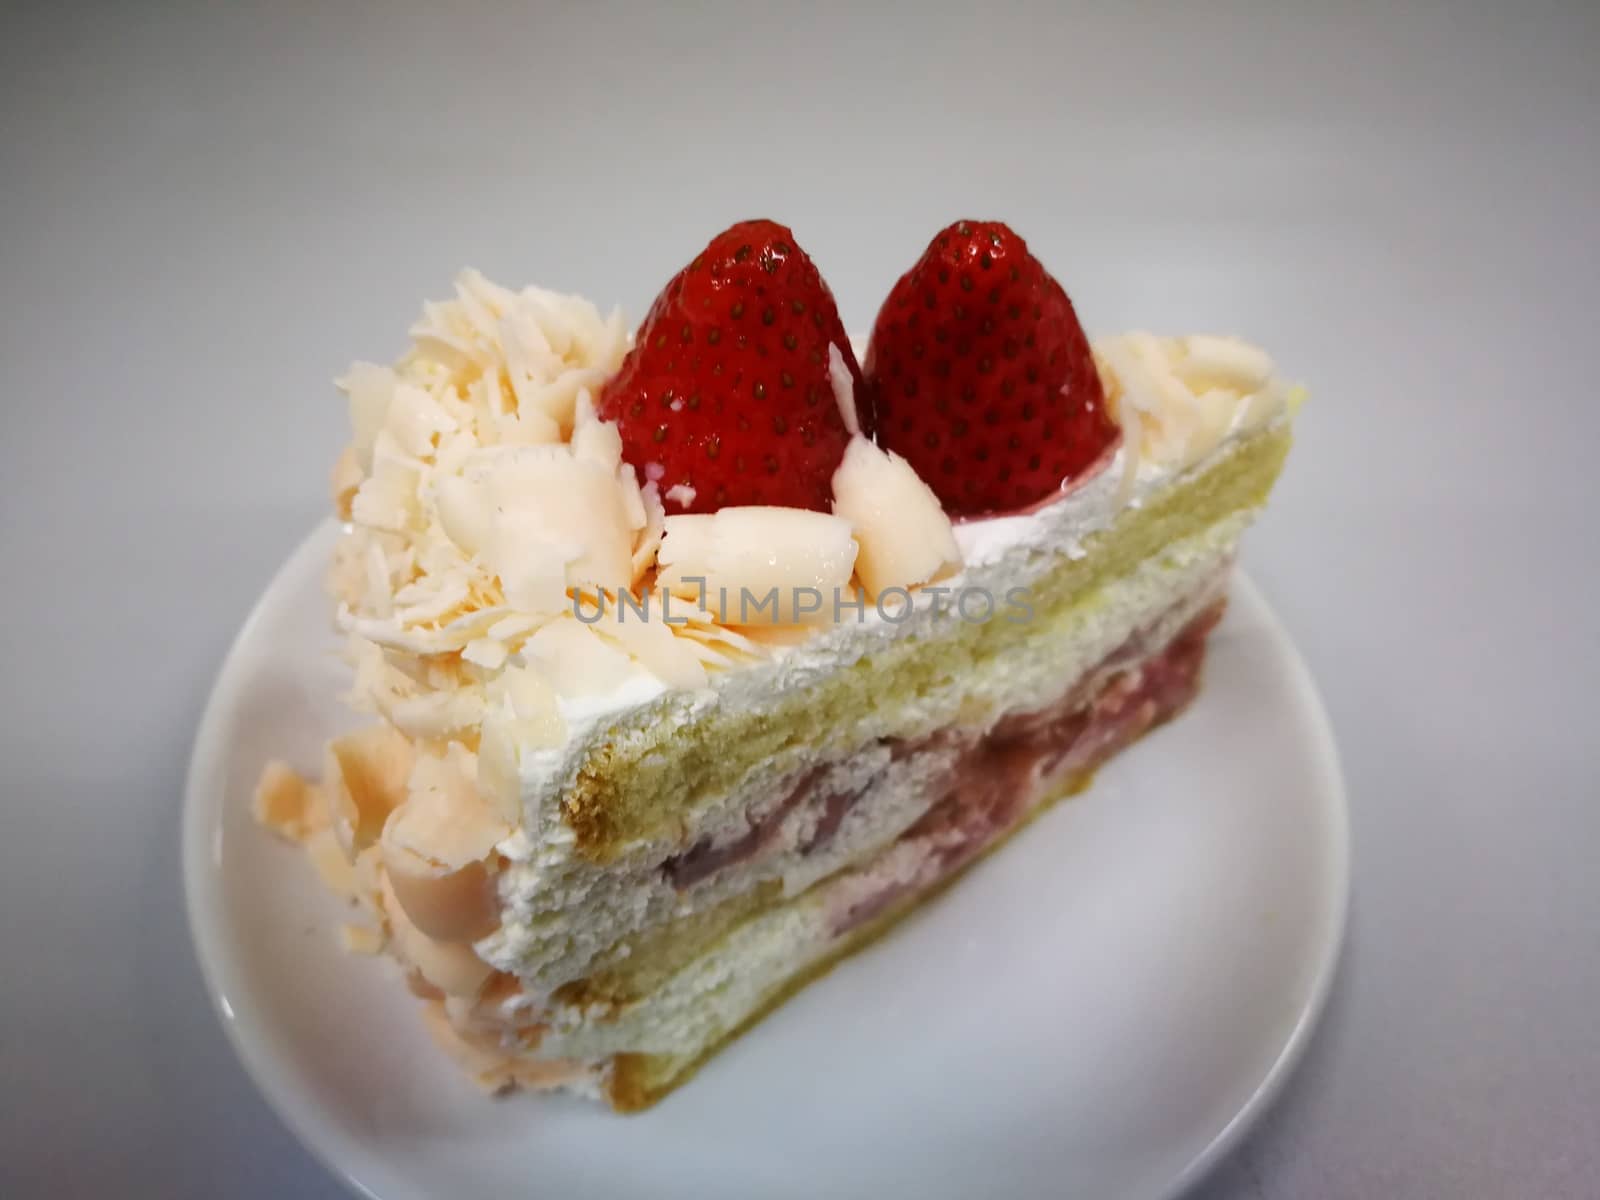 strawberry mouse vanila cake sweet  dessert homemade cake